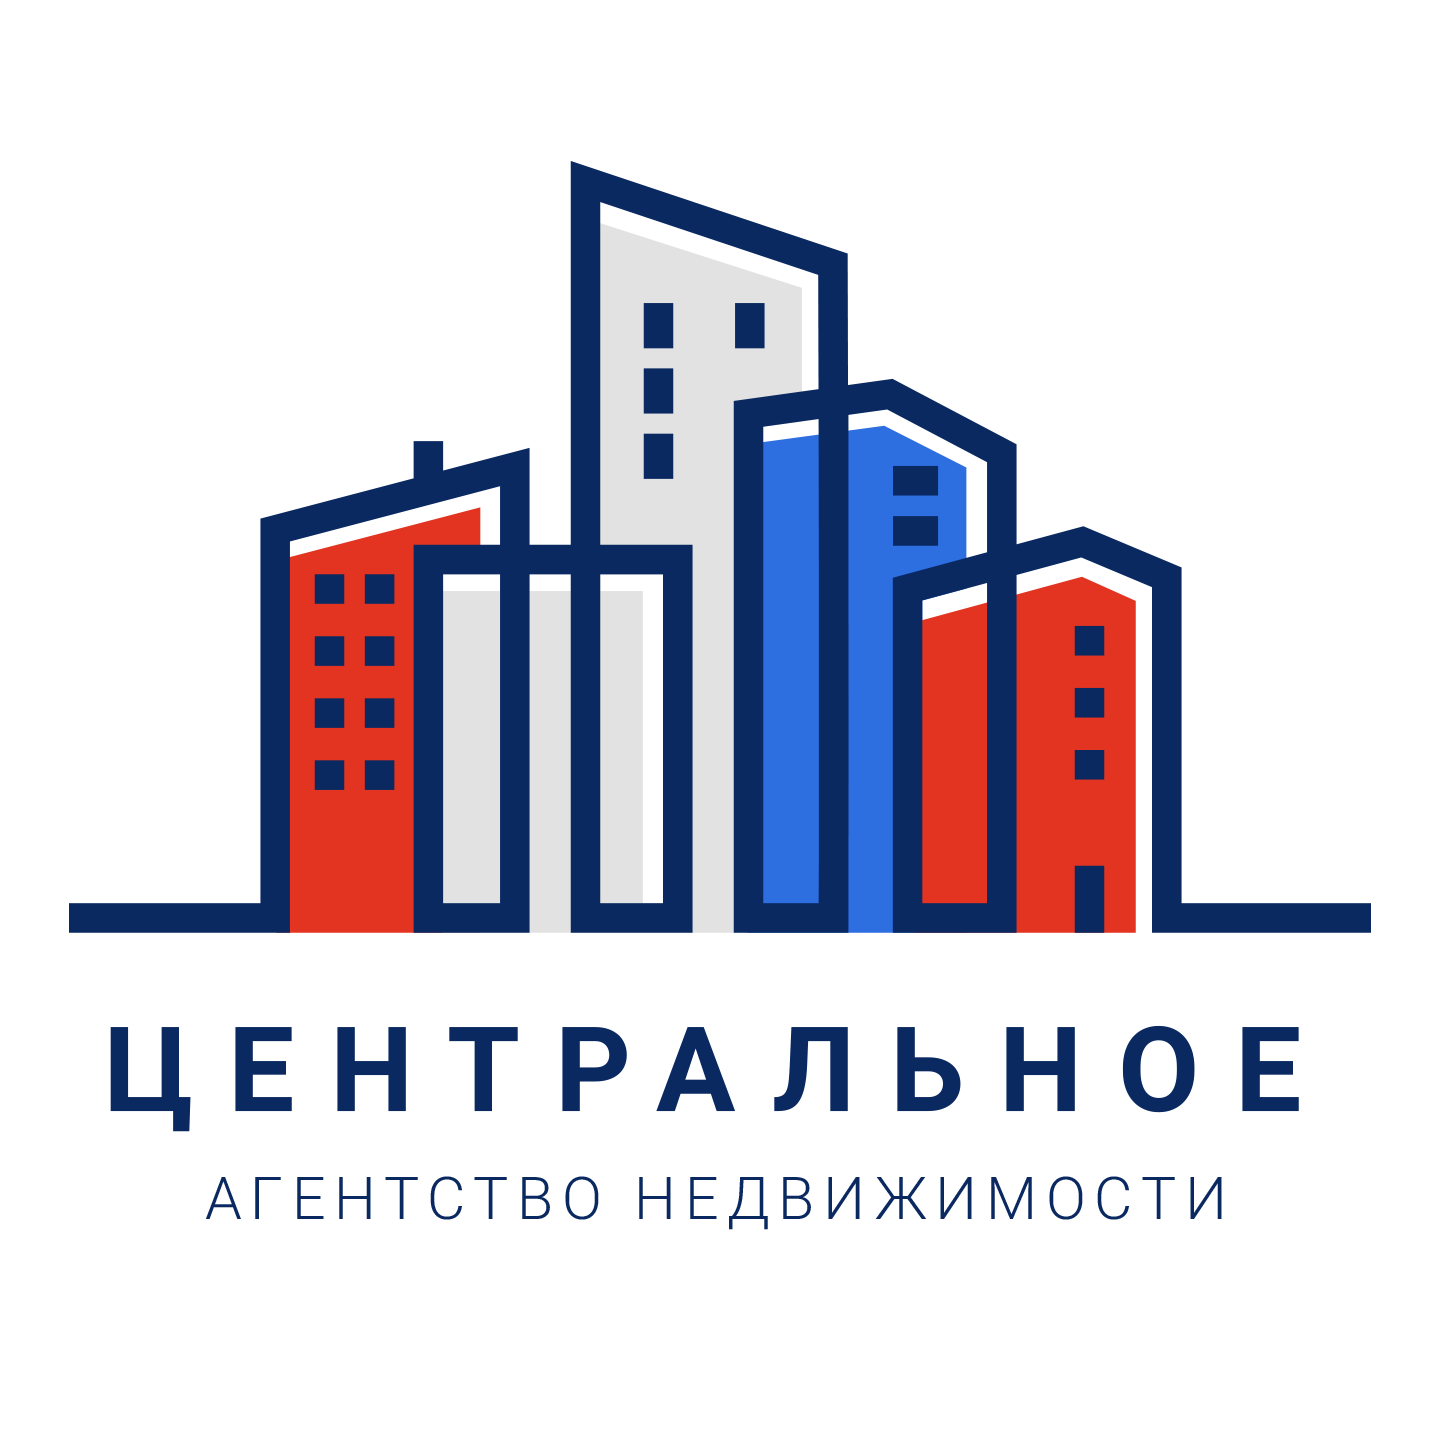 Услуги в сфере недвижимости Город Евпатория Logo_2.png